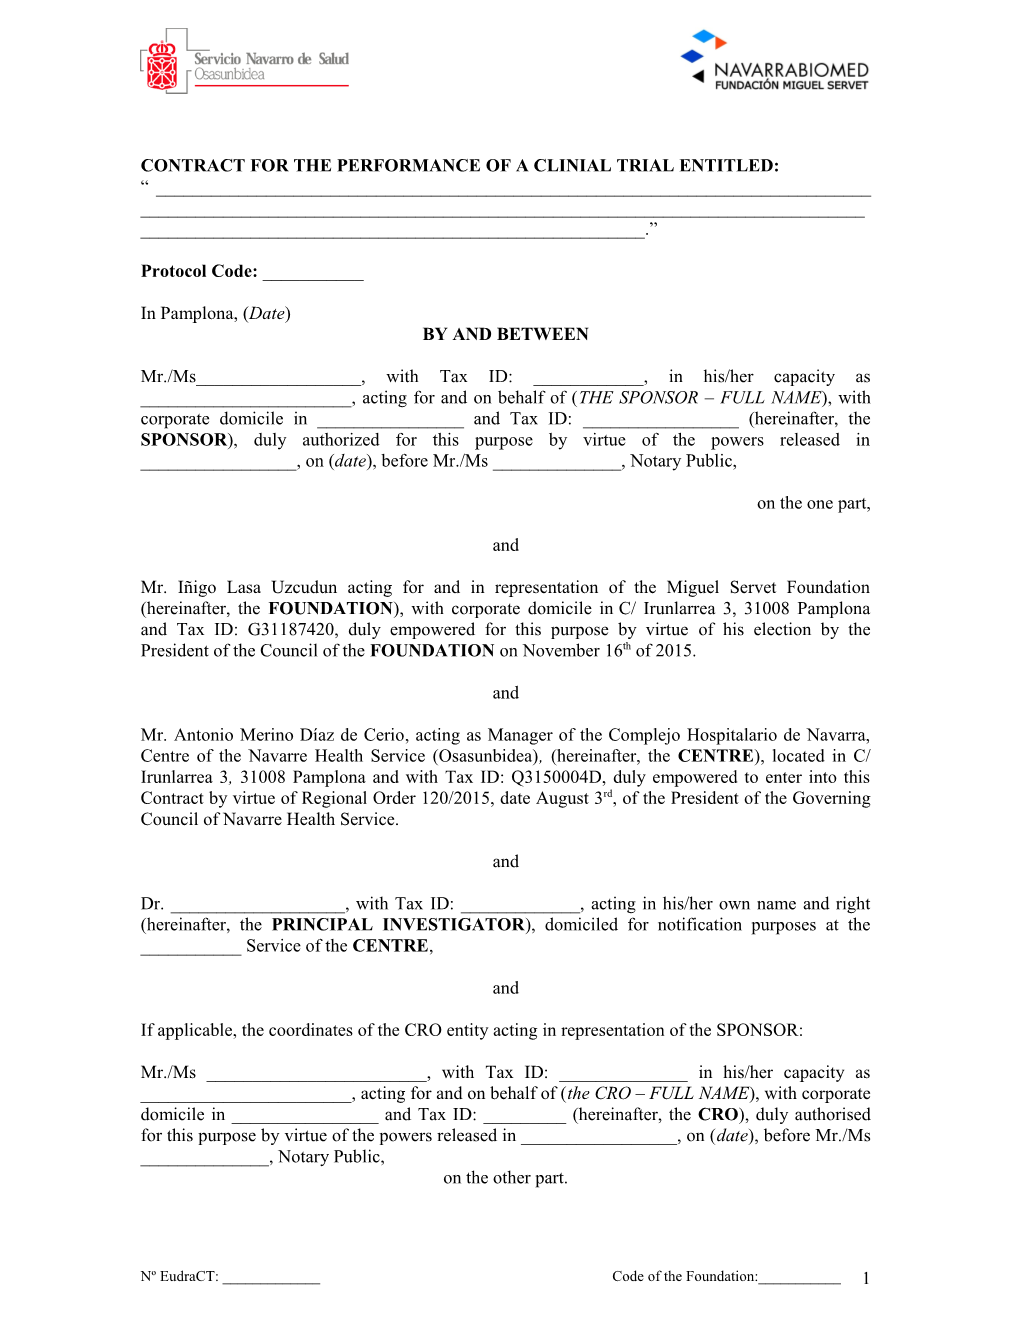 Contrato Para La Realización Del Ensayo Clínico Spd476-313 Entre La Fundacion Miguel Servet